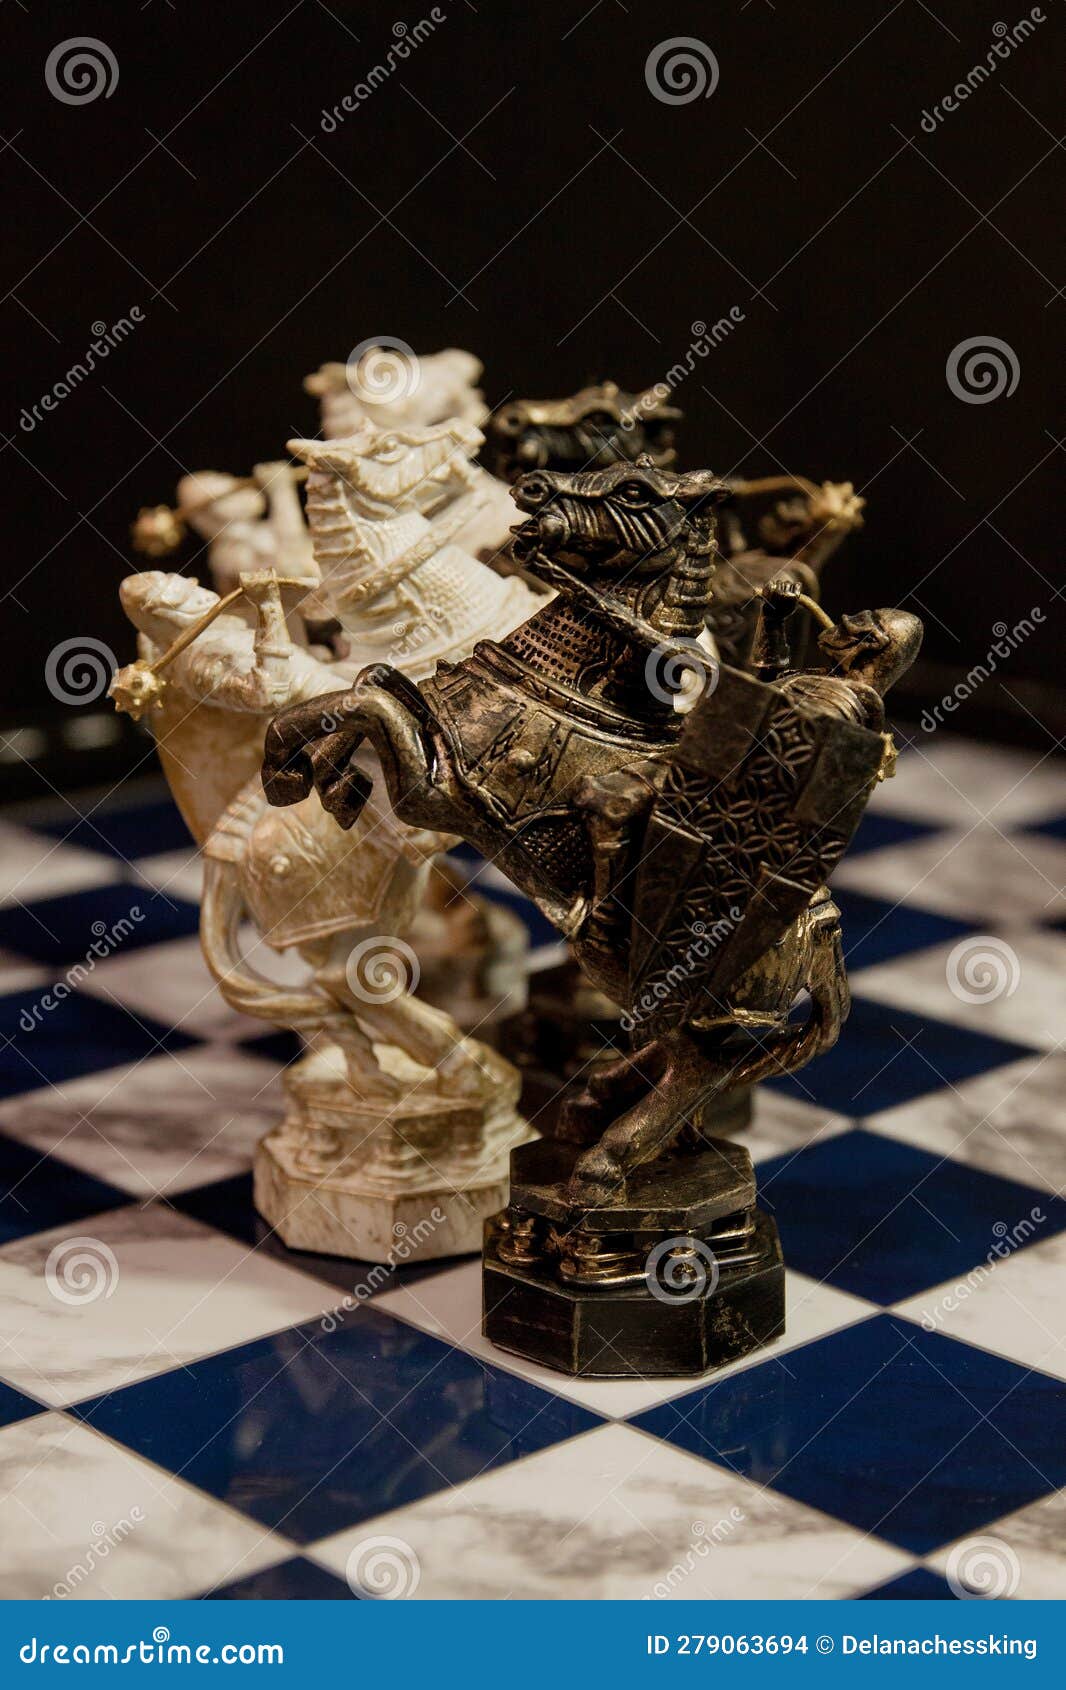 El ajedrez es un deporte de caballeros” de Oniria/TBWA para Equipo